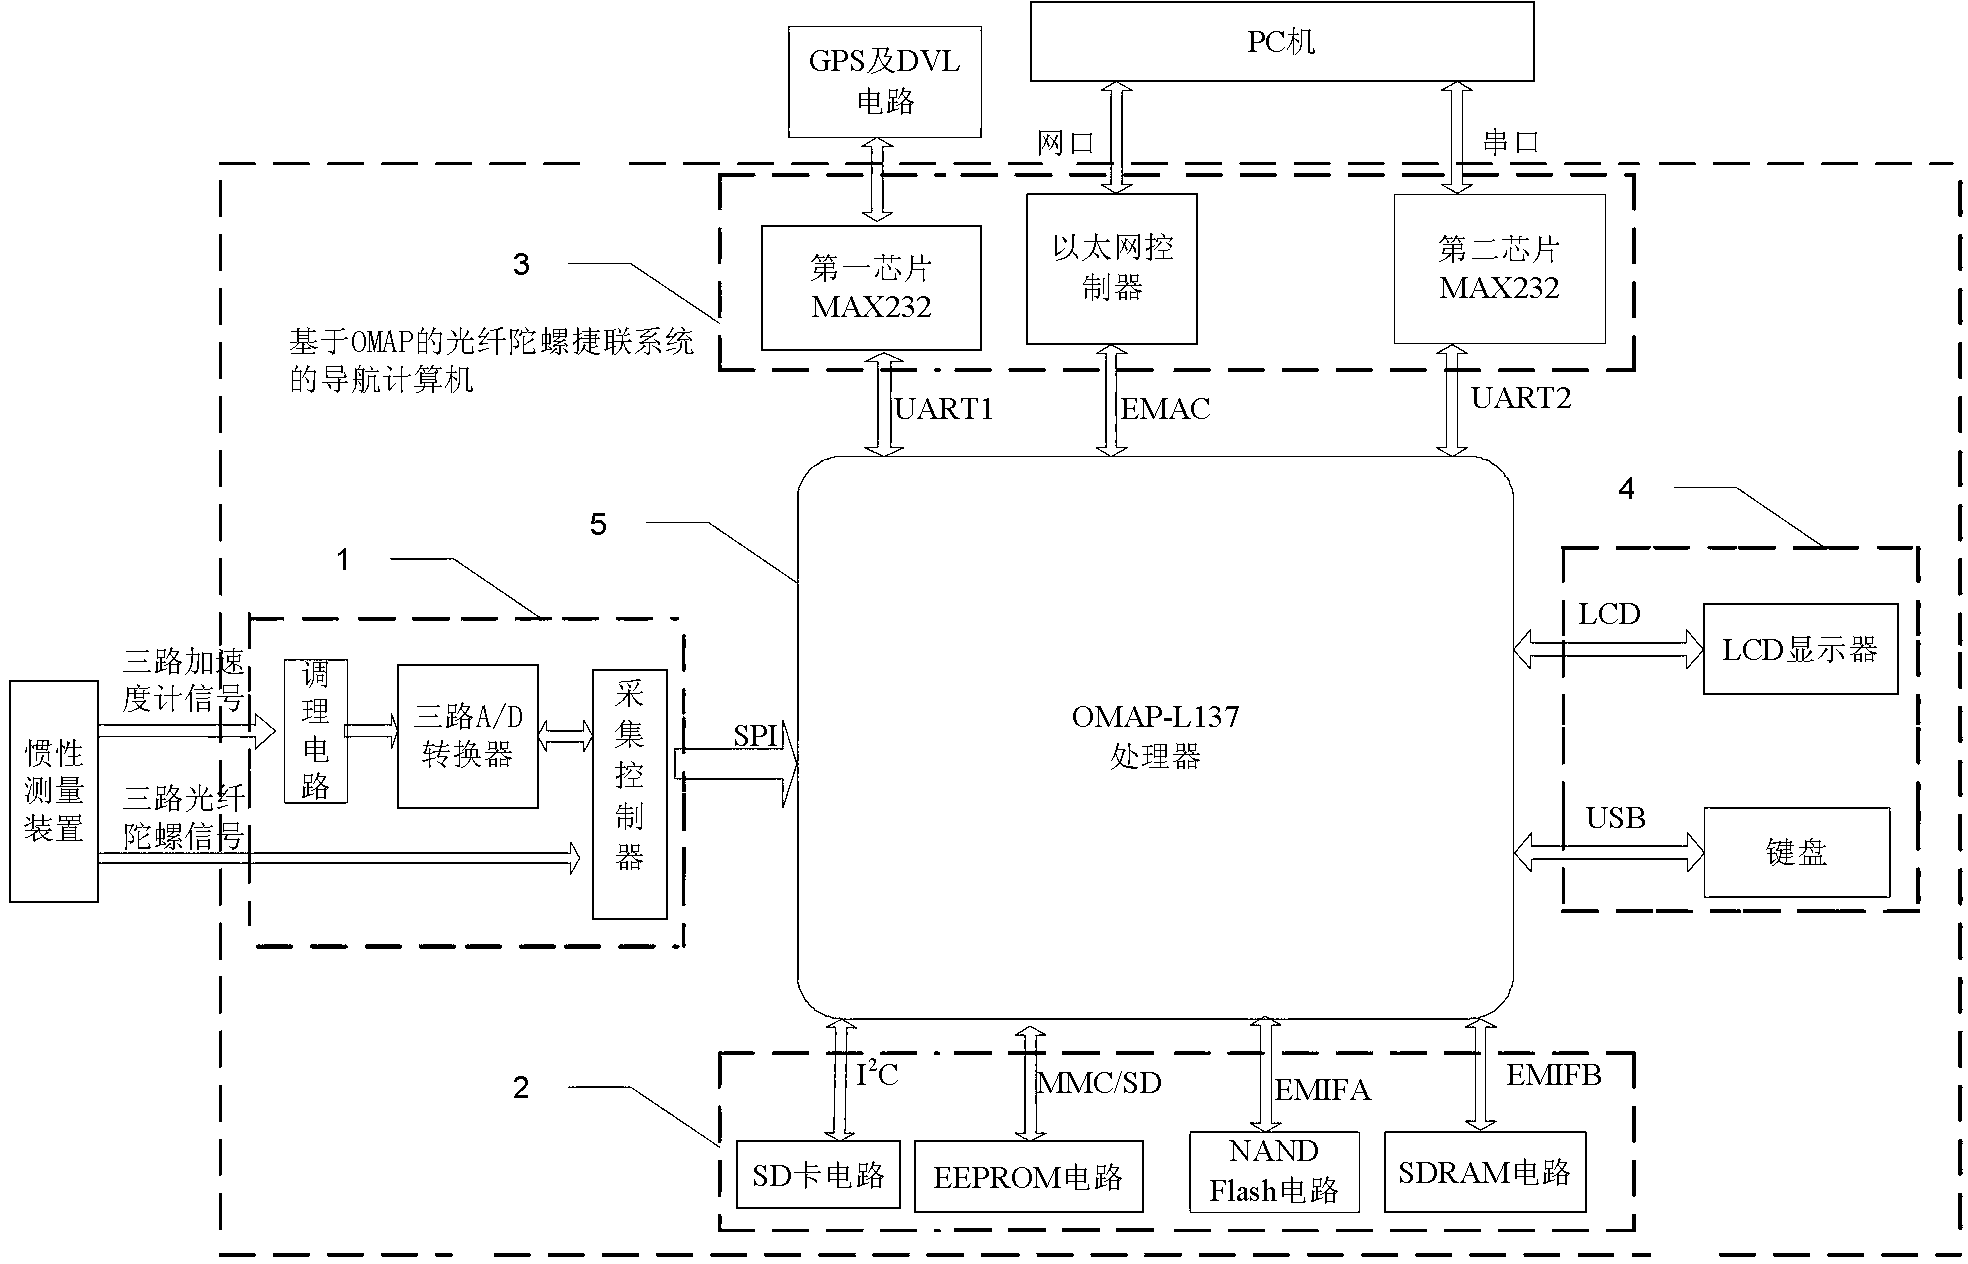 Navigation computer of optical fiber gyro strapdown system based on OMAP